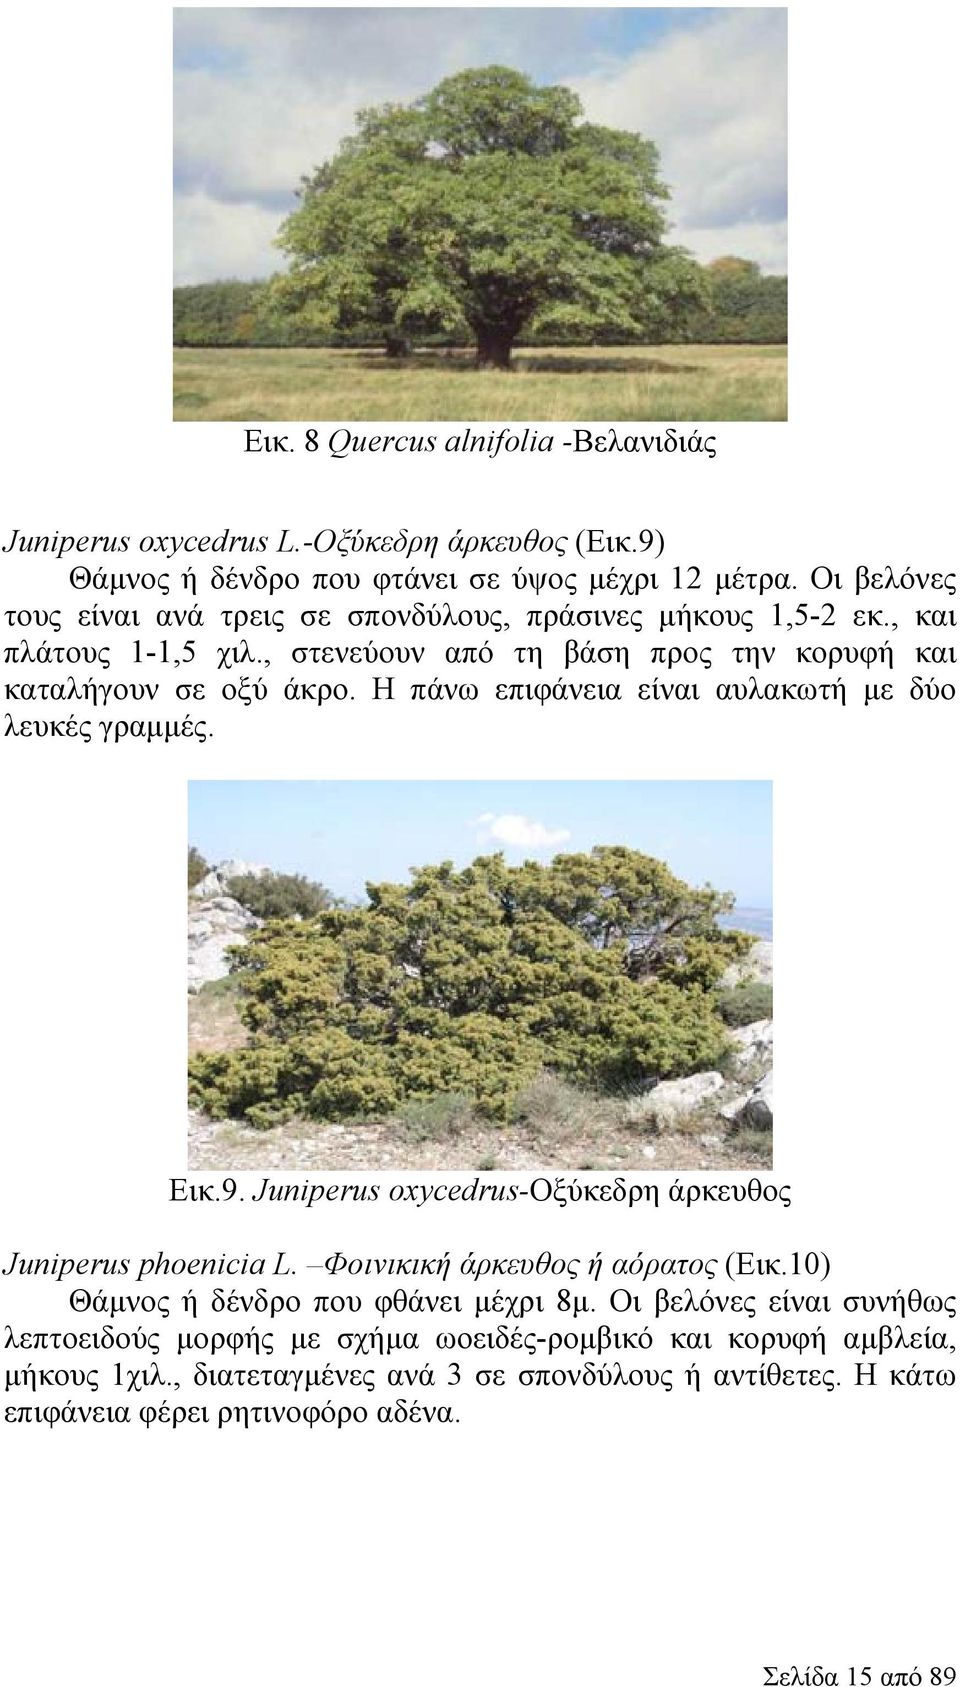 Η πάνω επιφάνεια είναι αυλακωτή με δύο λευκές γραμμές. Εικ.9. Juniperus oxycedrus-οξύκεδρη άρκευθος Juniperus phoenicia L. Φοινικική άρκευθος ή αόρατος (Εικ.